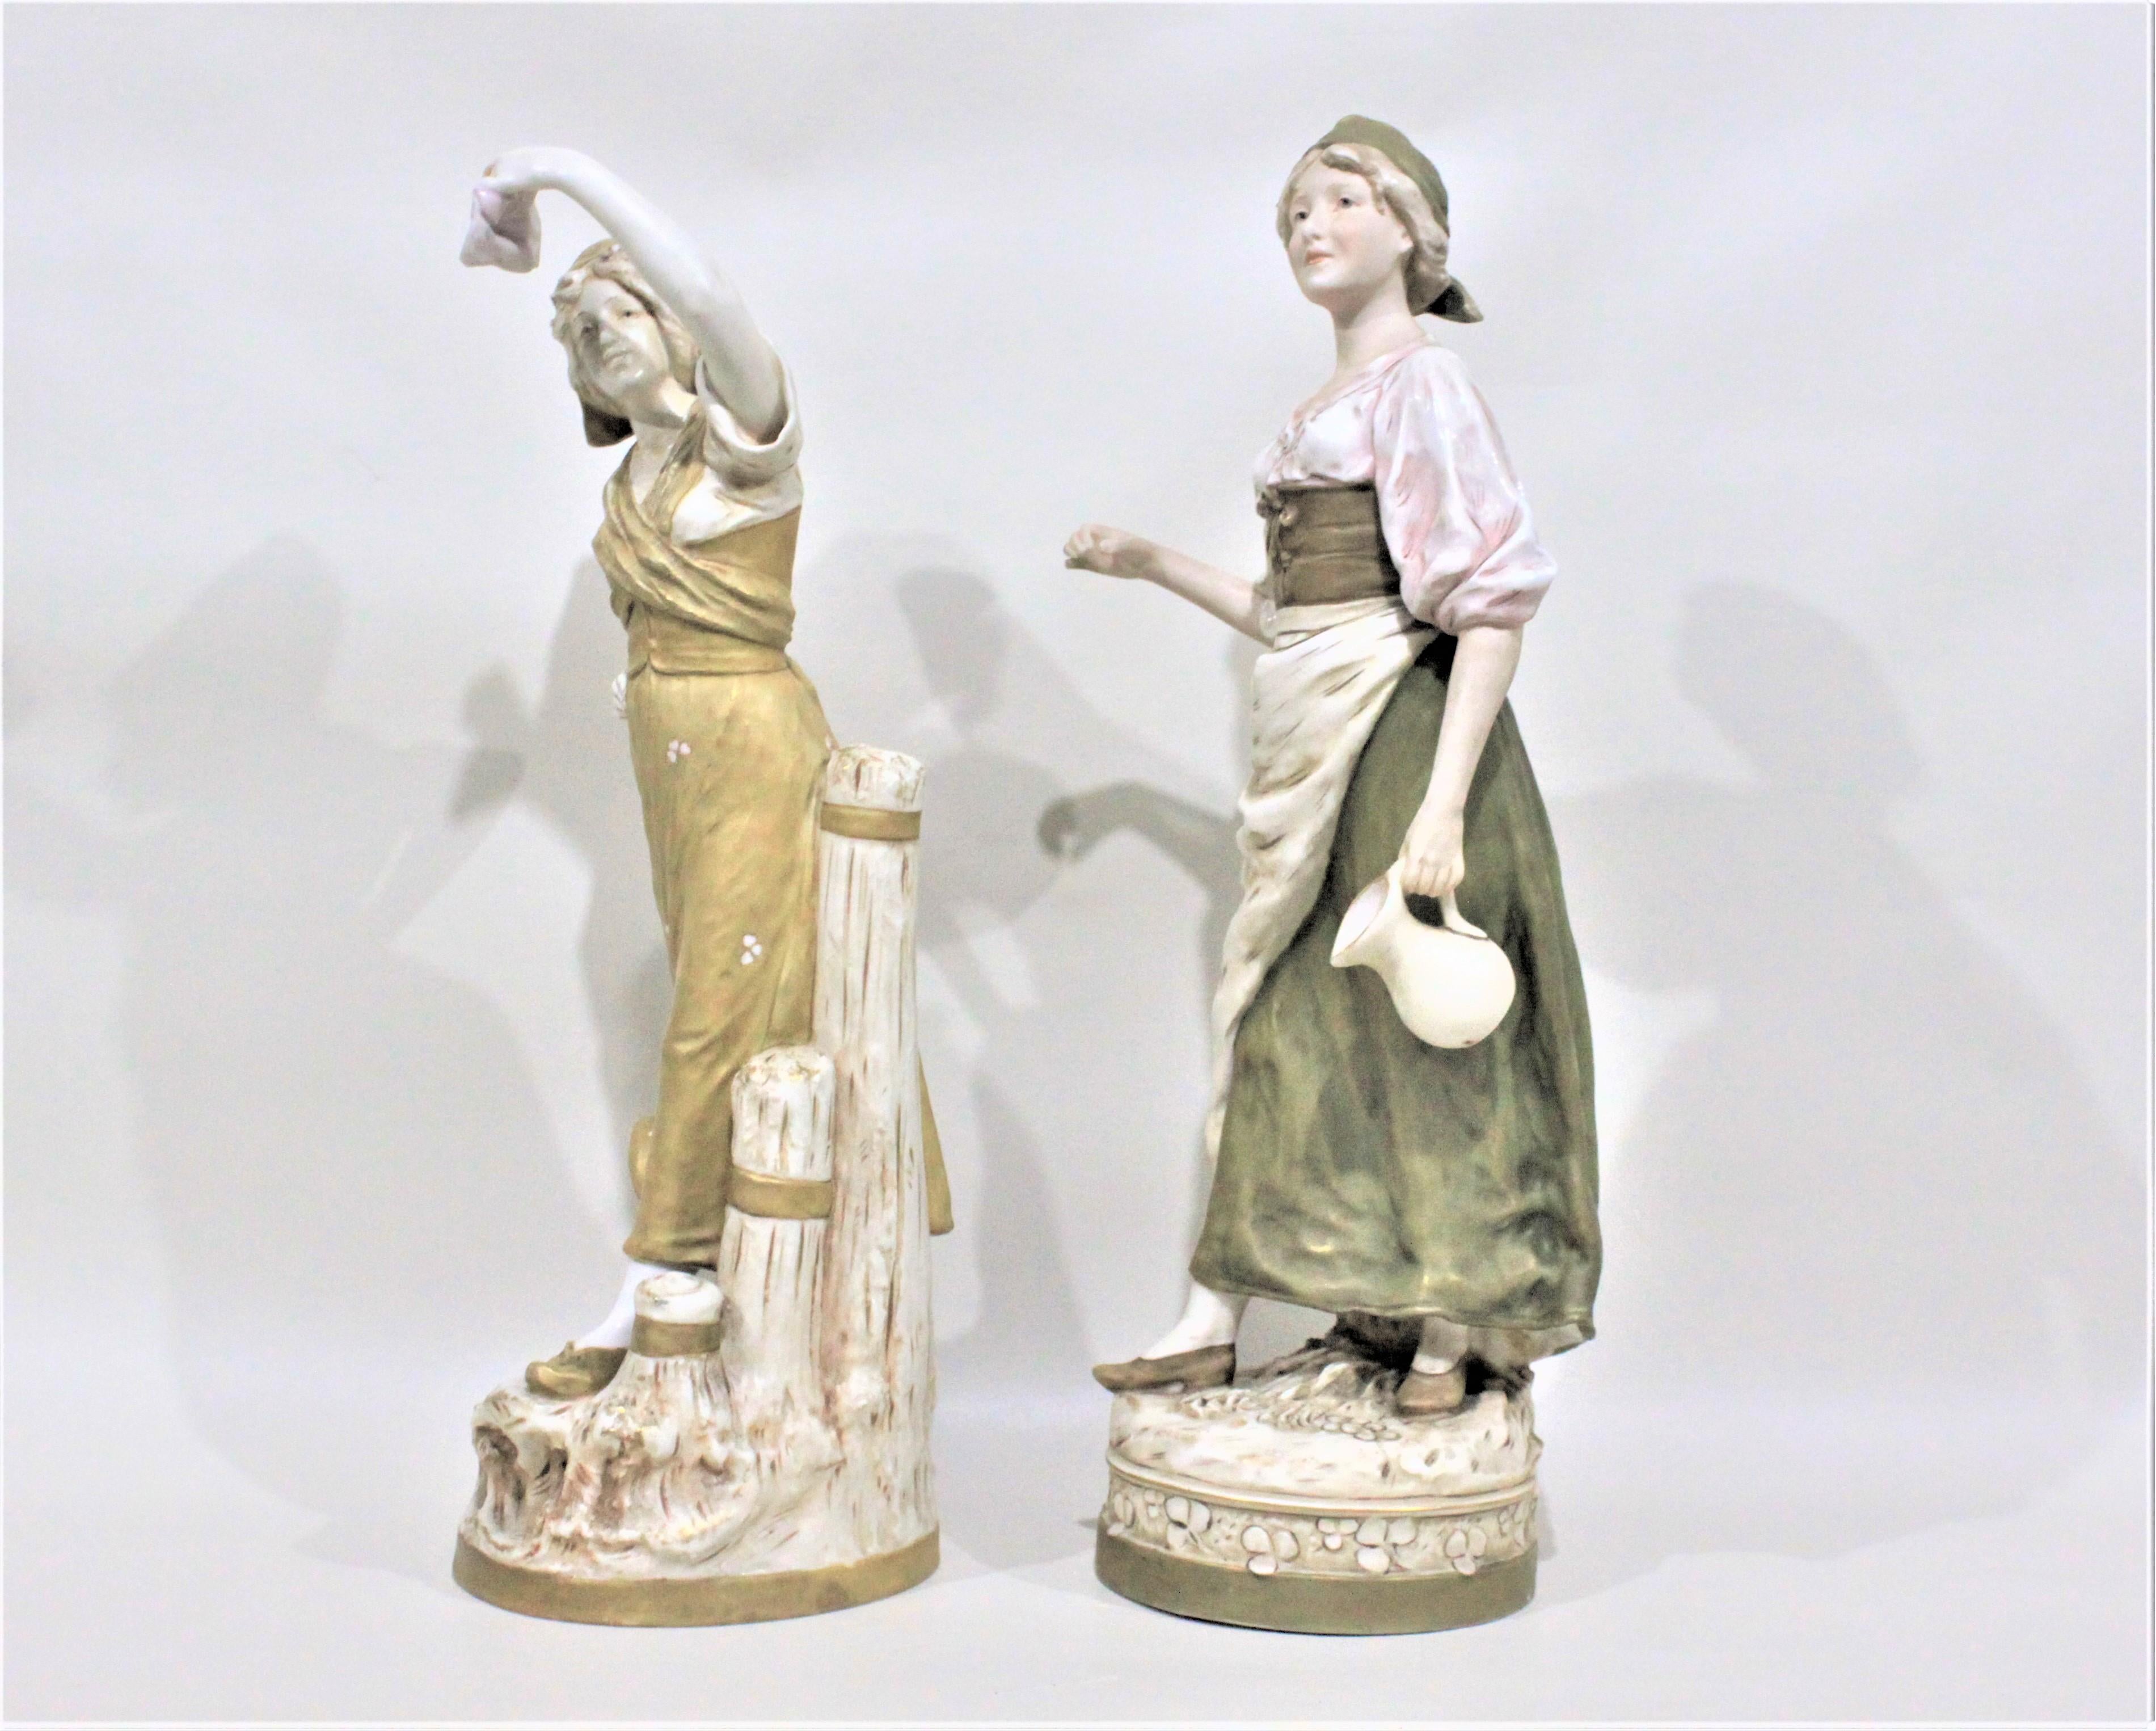 Hand-Crafted Pair of Antique Art Nouveau Royal Dux Porcelain Figurines For Sale